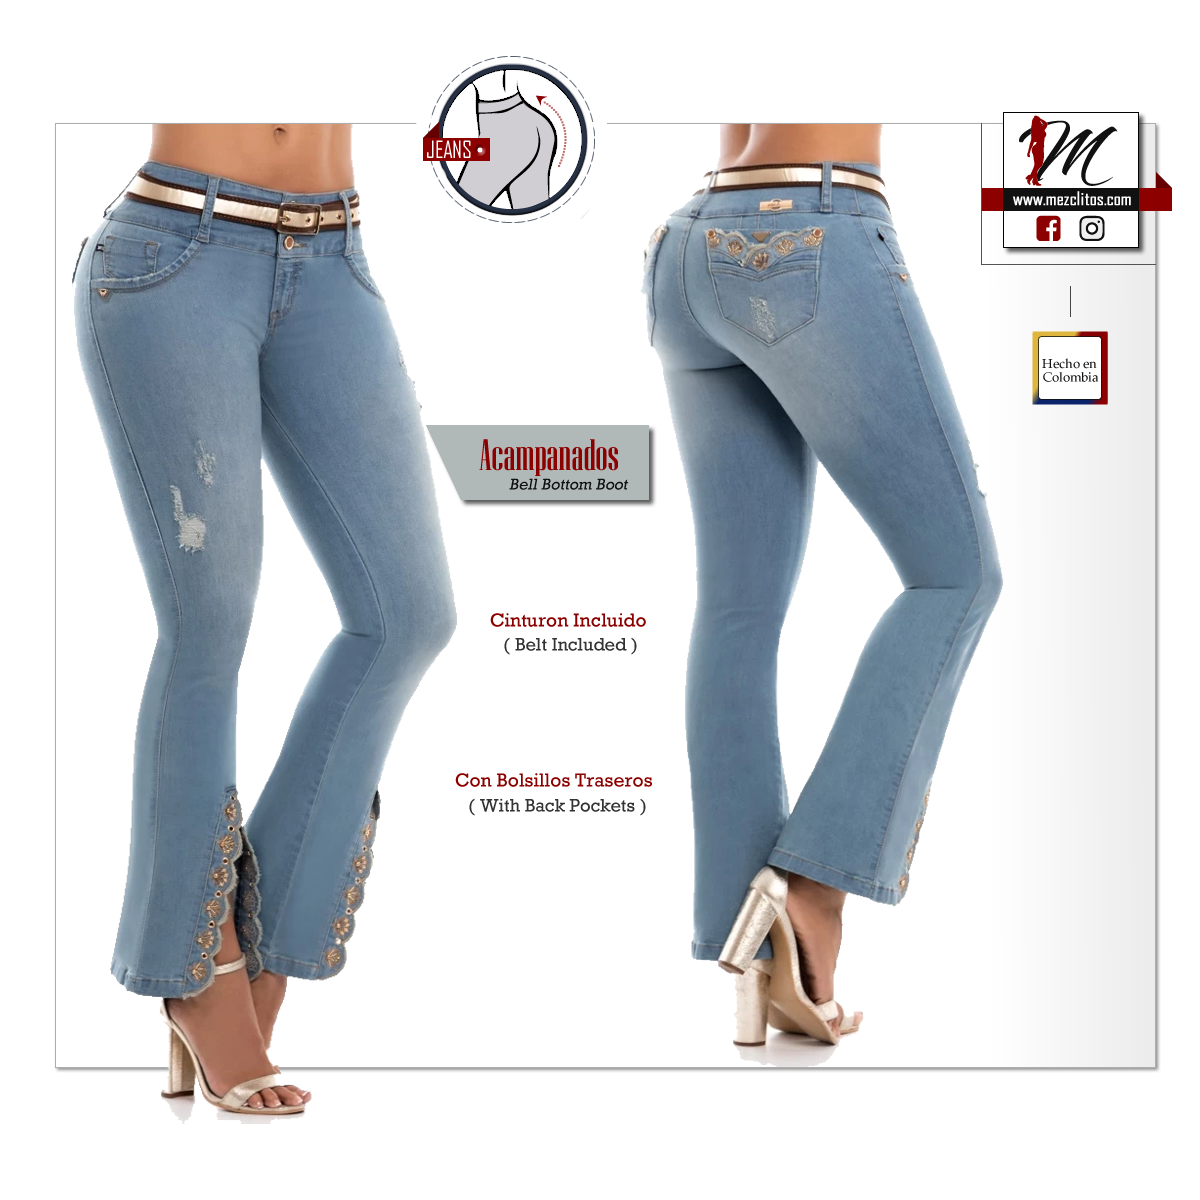 ENE2 Jeans 903339 100% Colombianos – Mezclitos